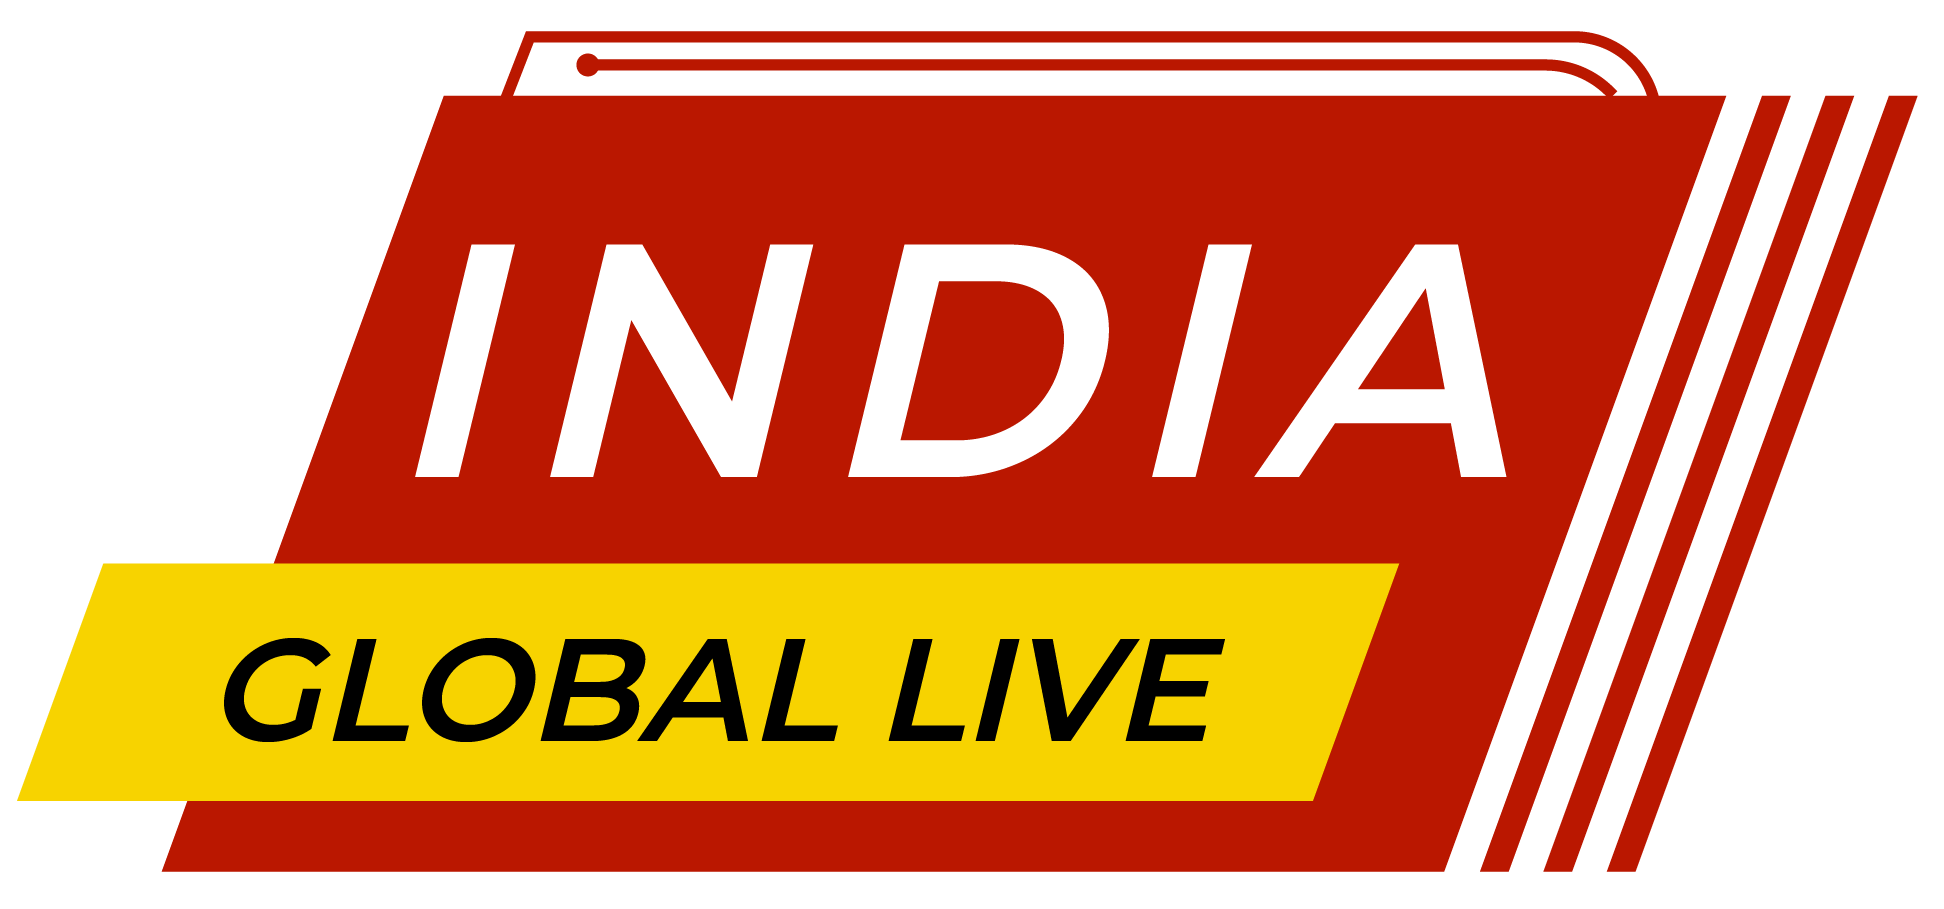 India Global Live